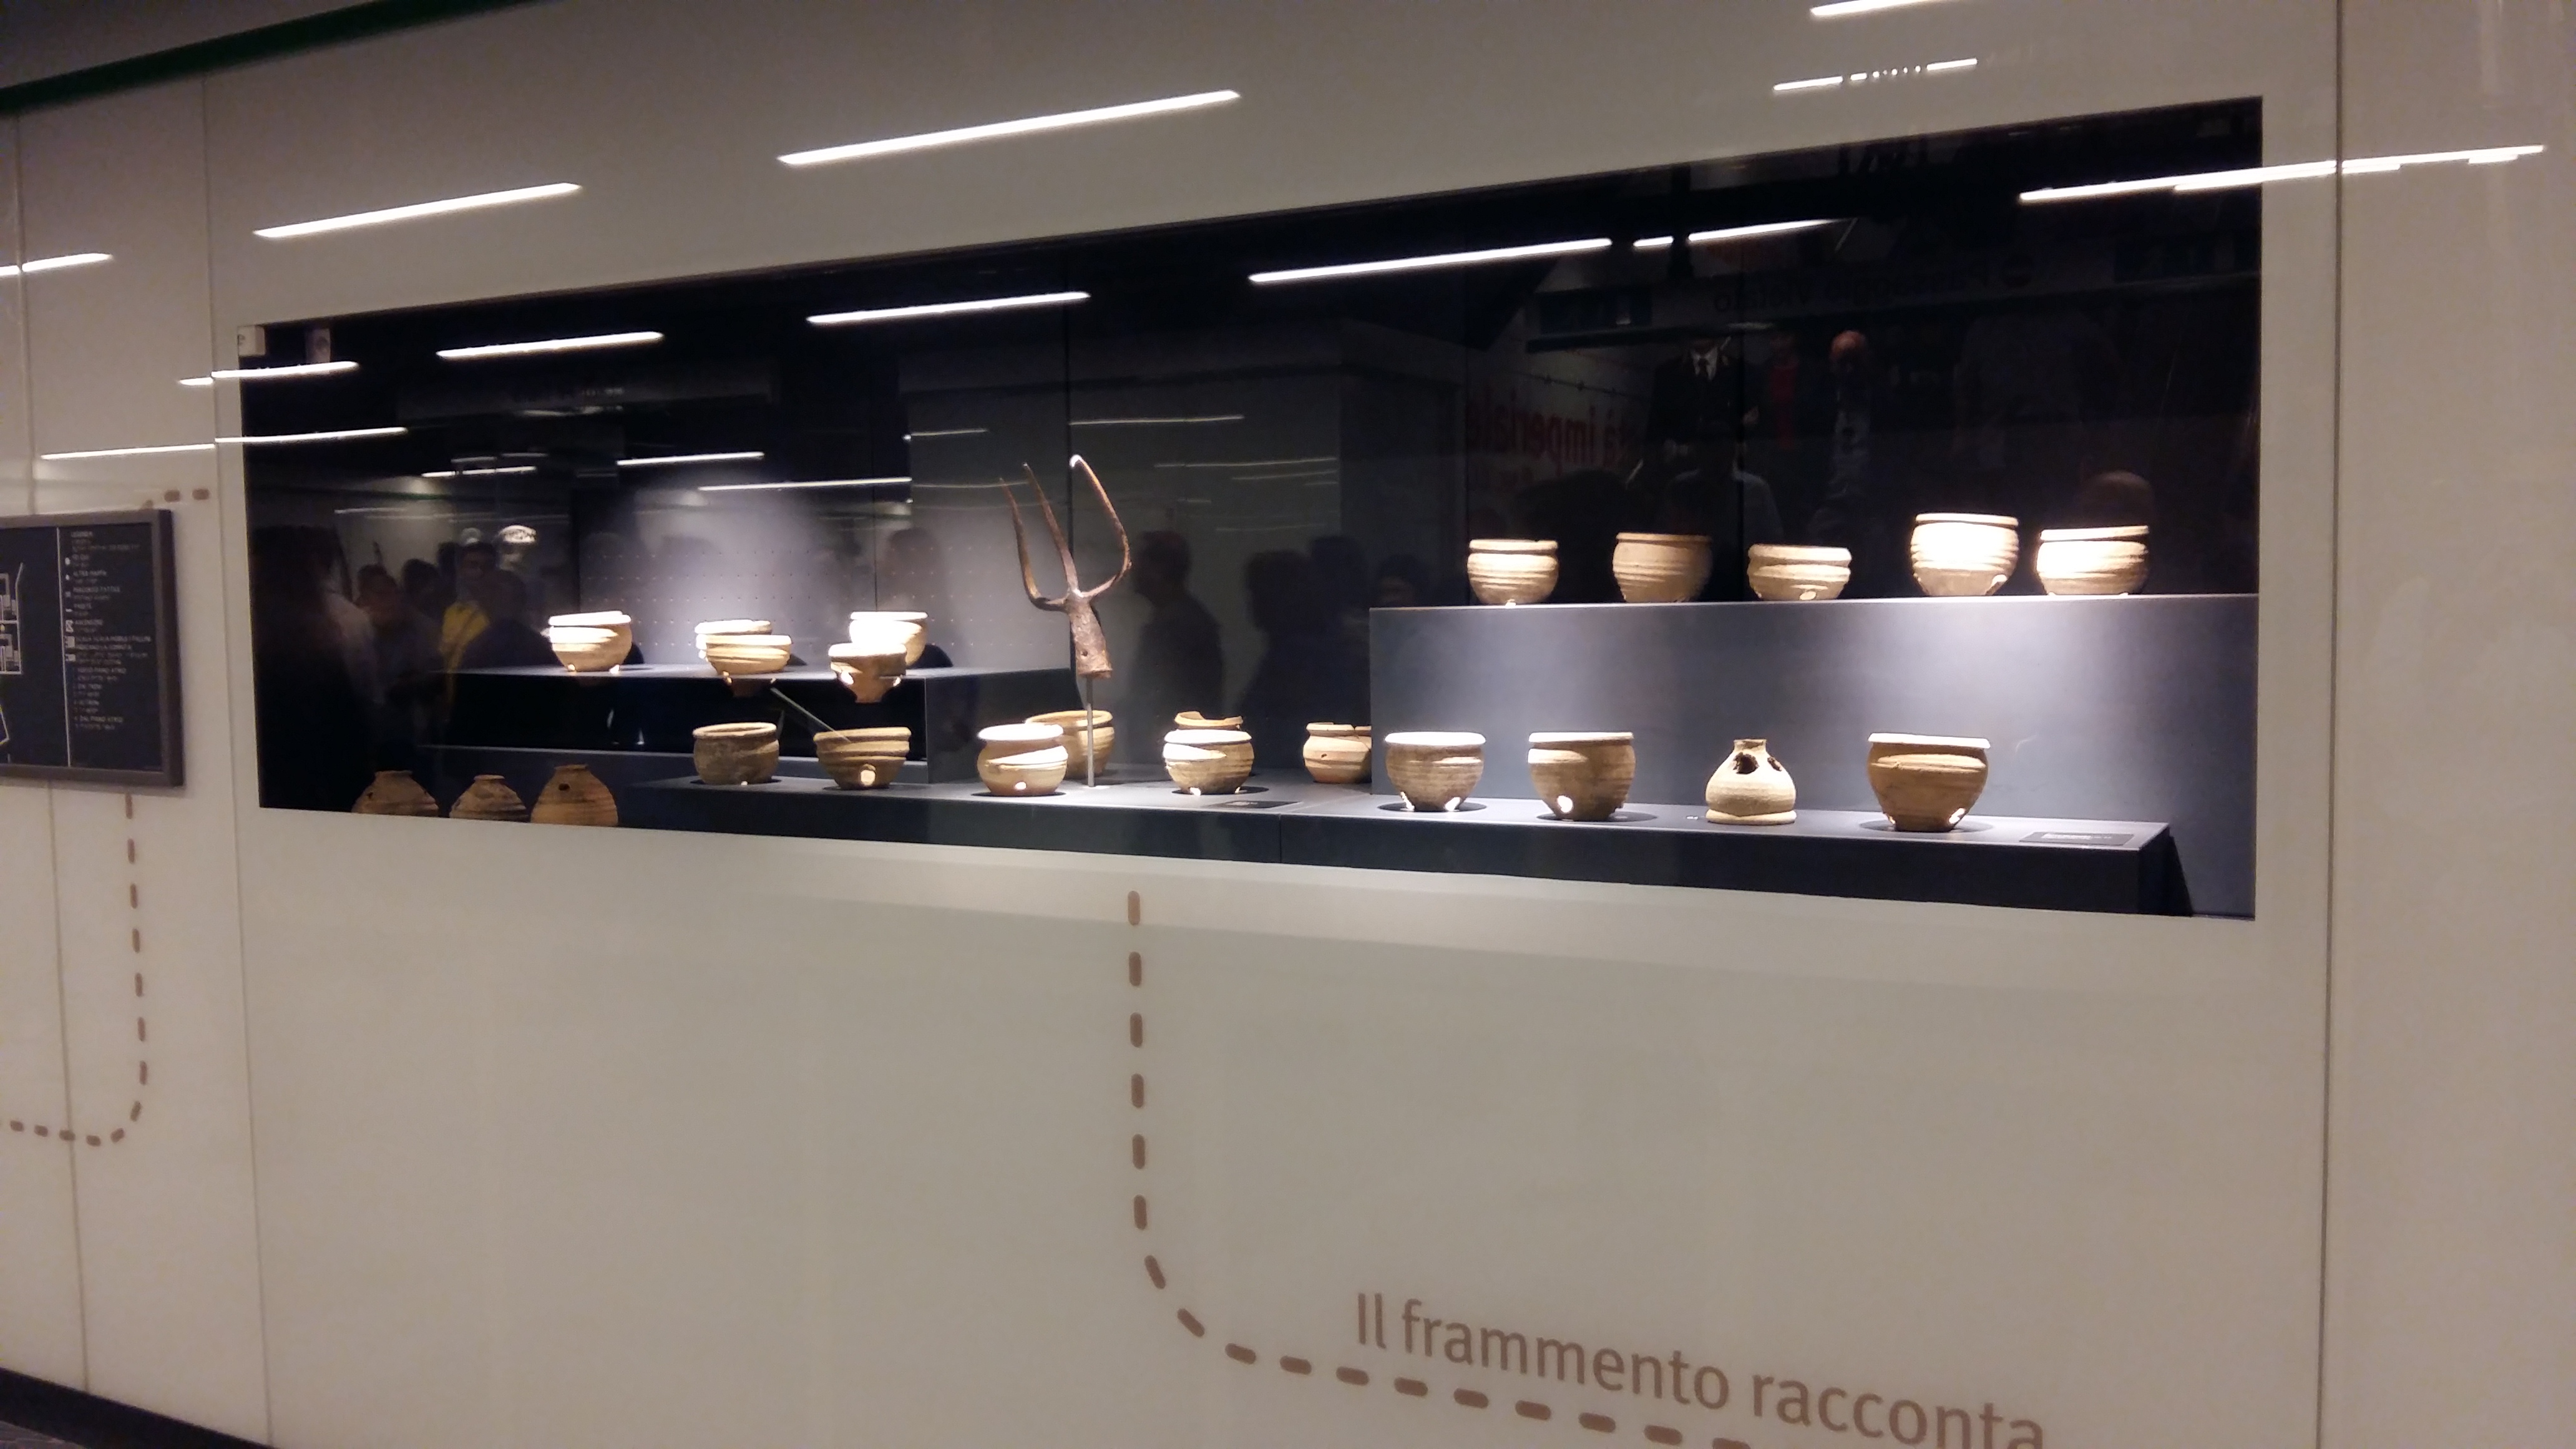 La vetrina contenente il vasellame romano recuperato dagli scavi della Metro C a San Giovanni